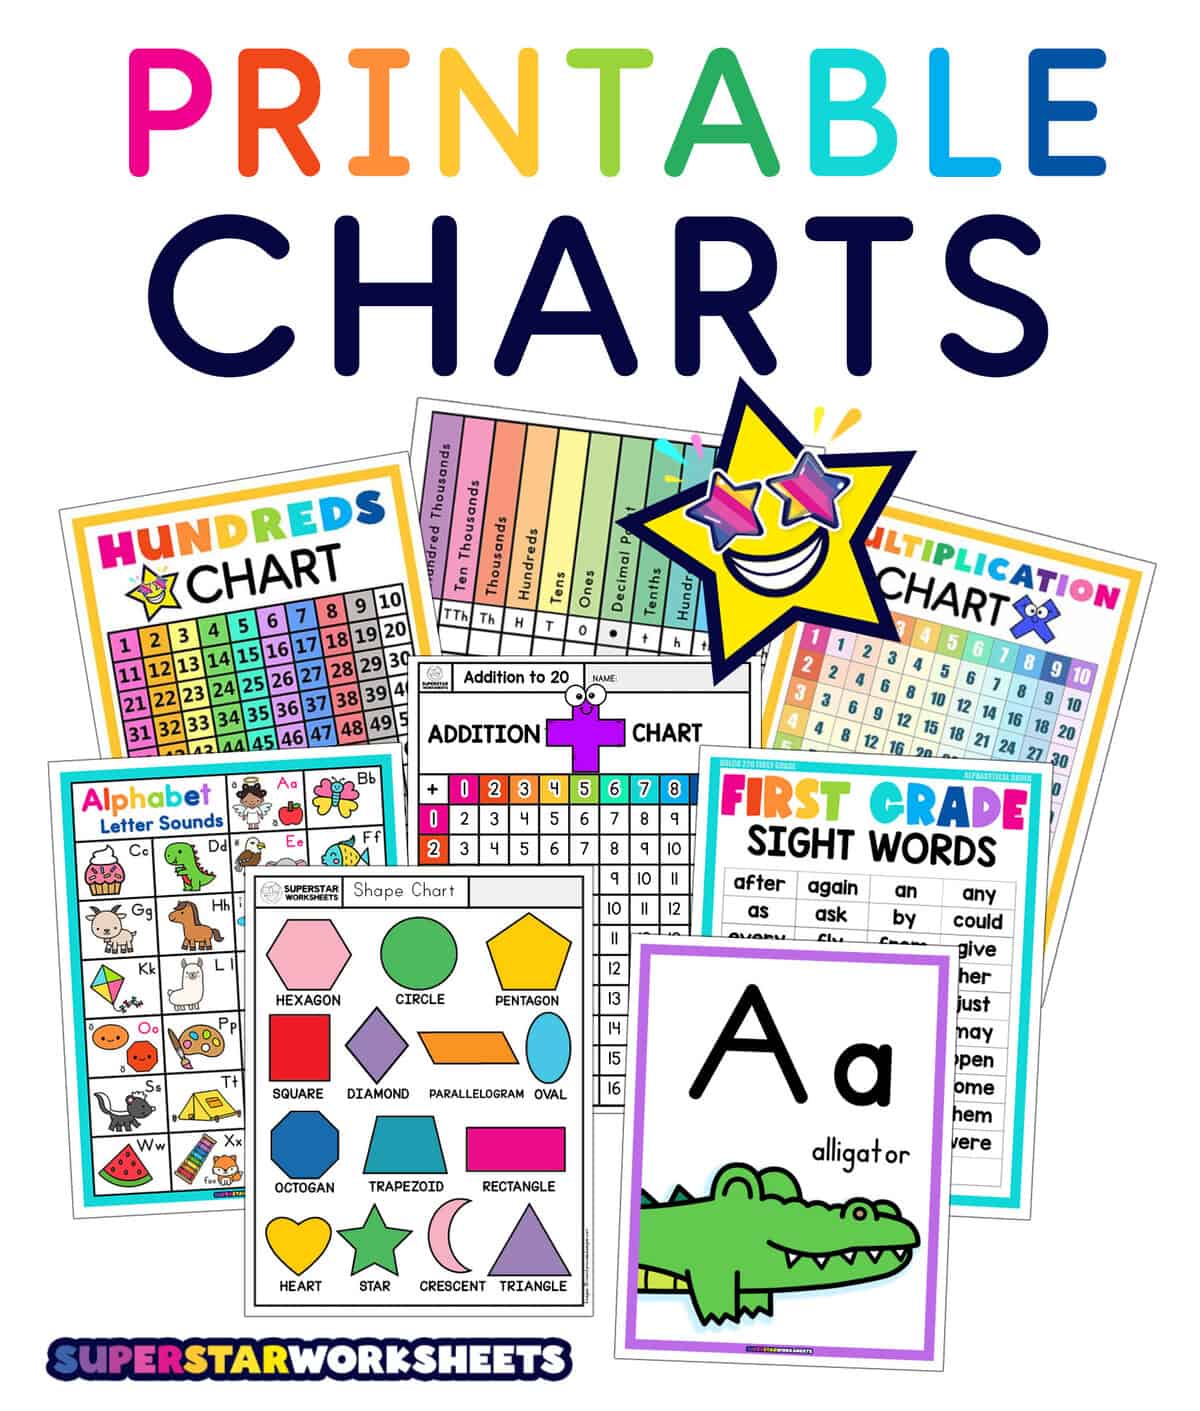 Printable Charts - Superstar Worksheets